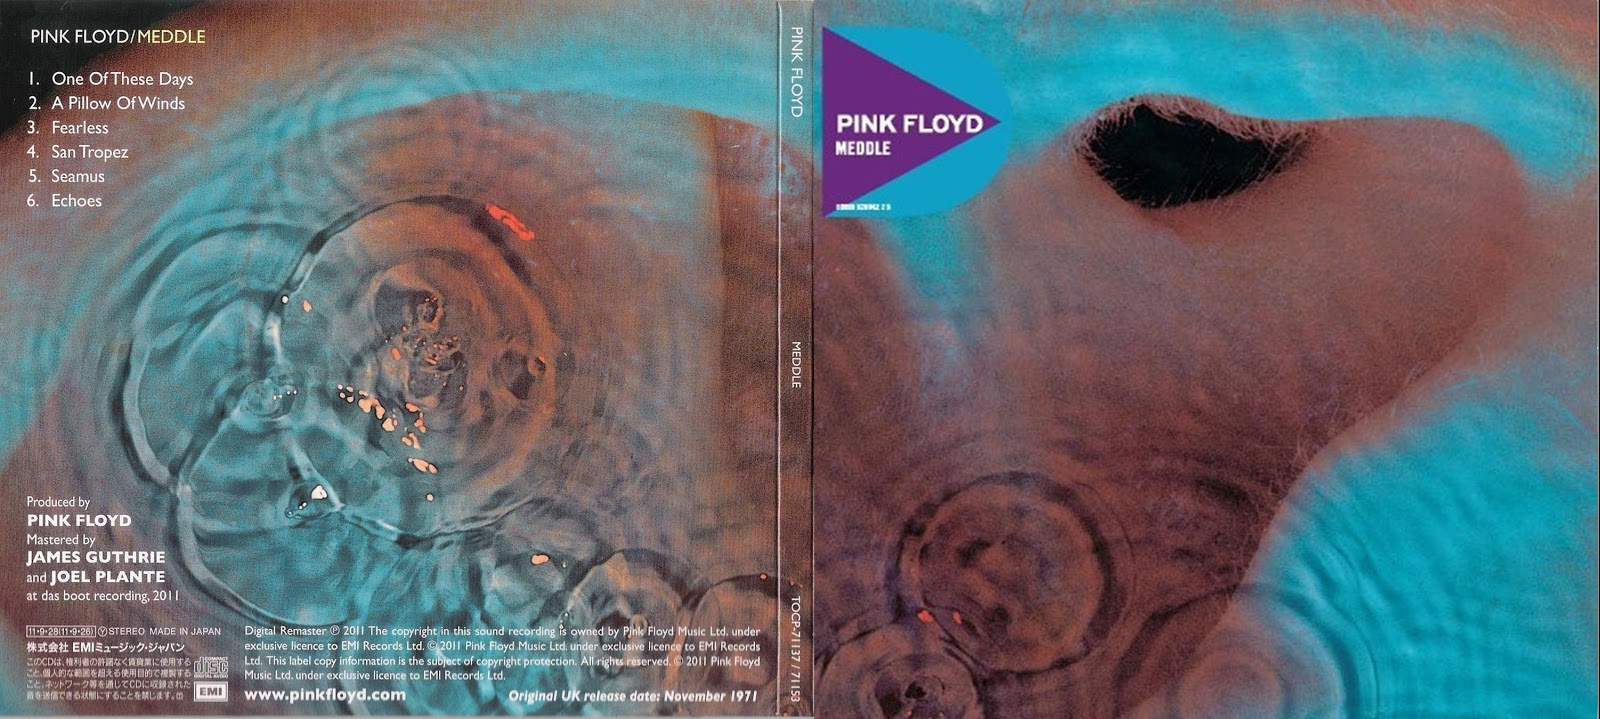 ¿Qué estáis escuchando ahora? - Página 2 Pink+Floyd+-+Discovery+Box+Set+-+Meddle